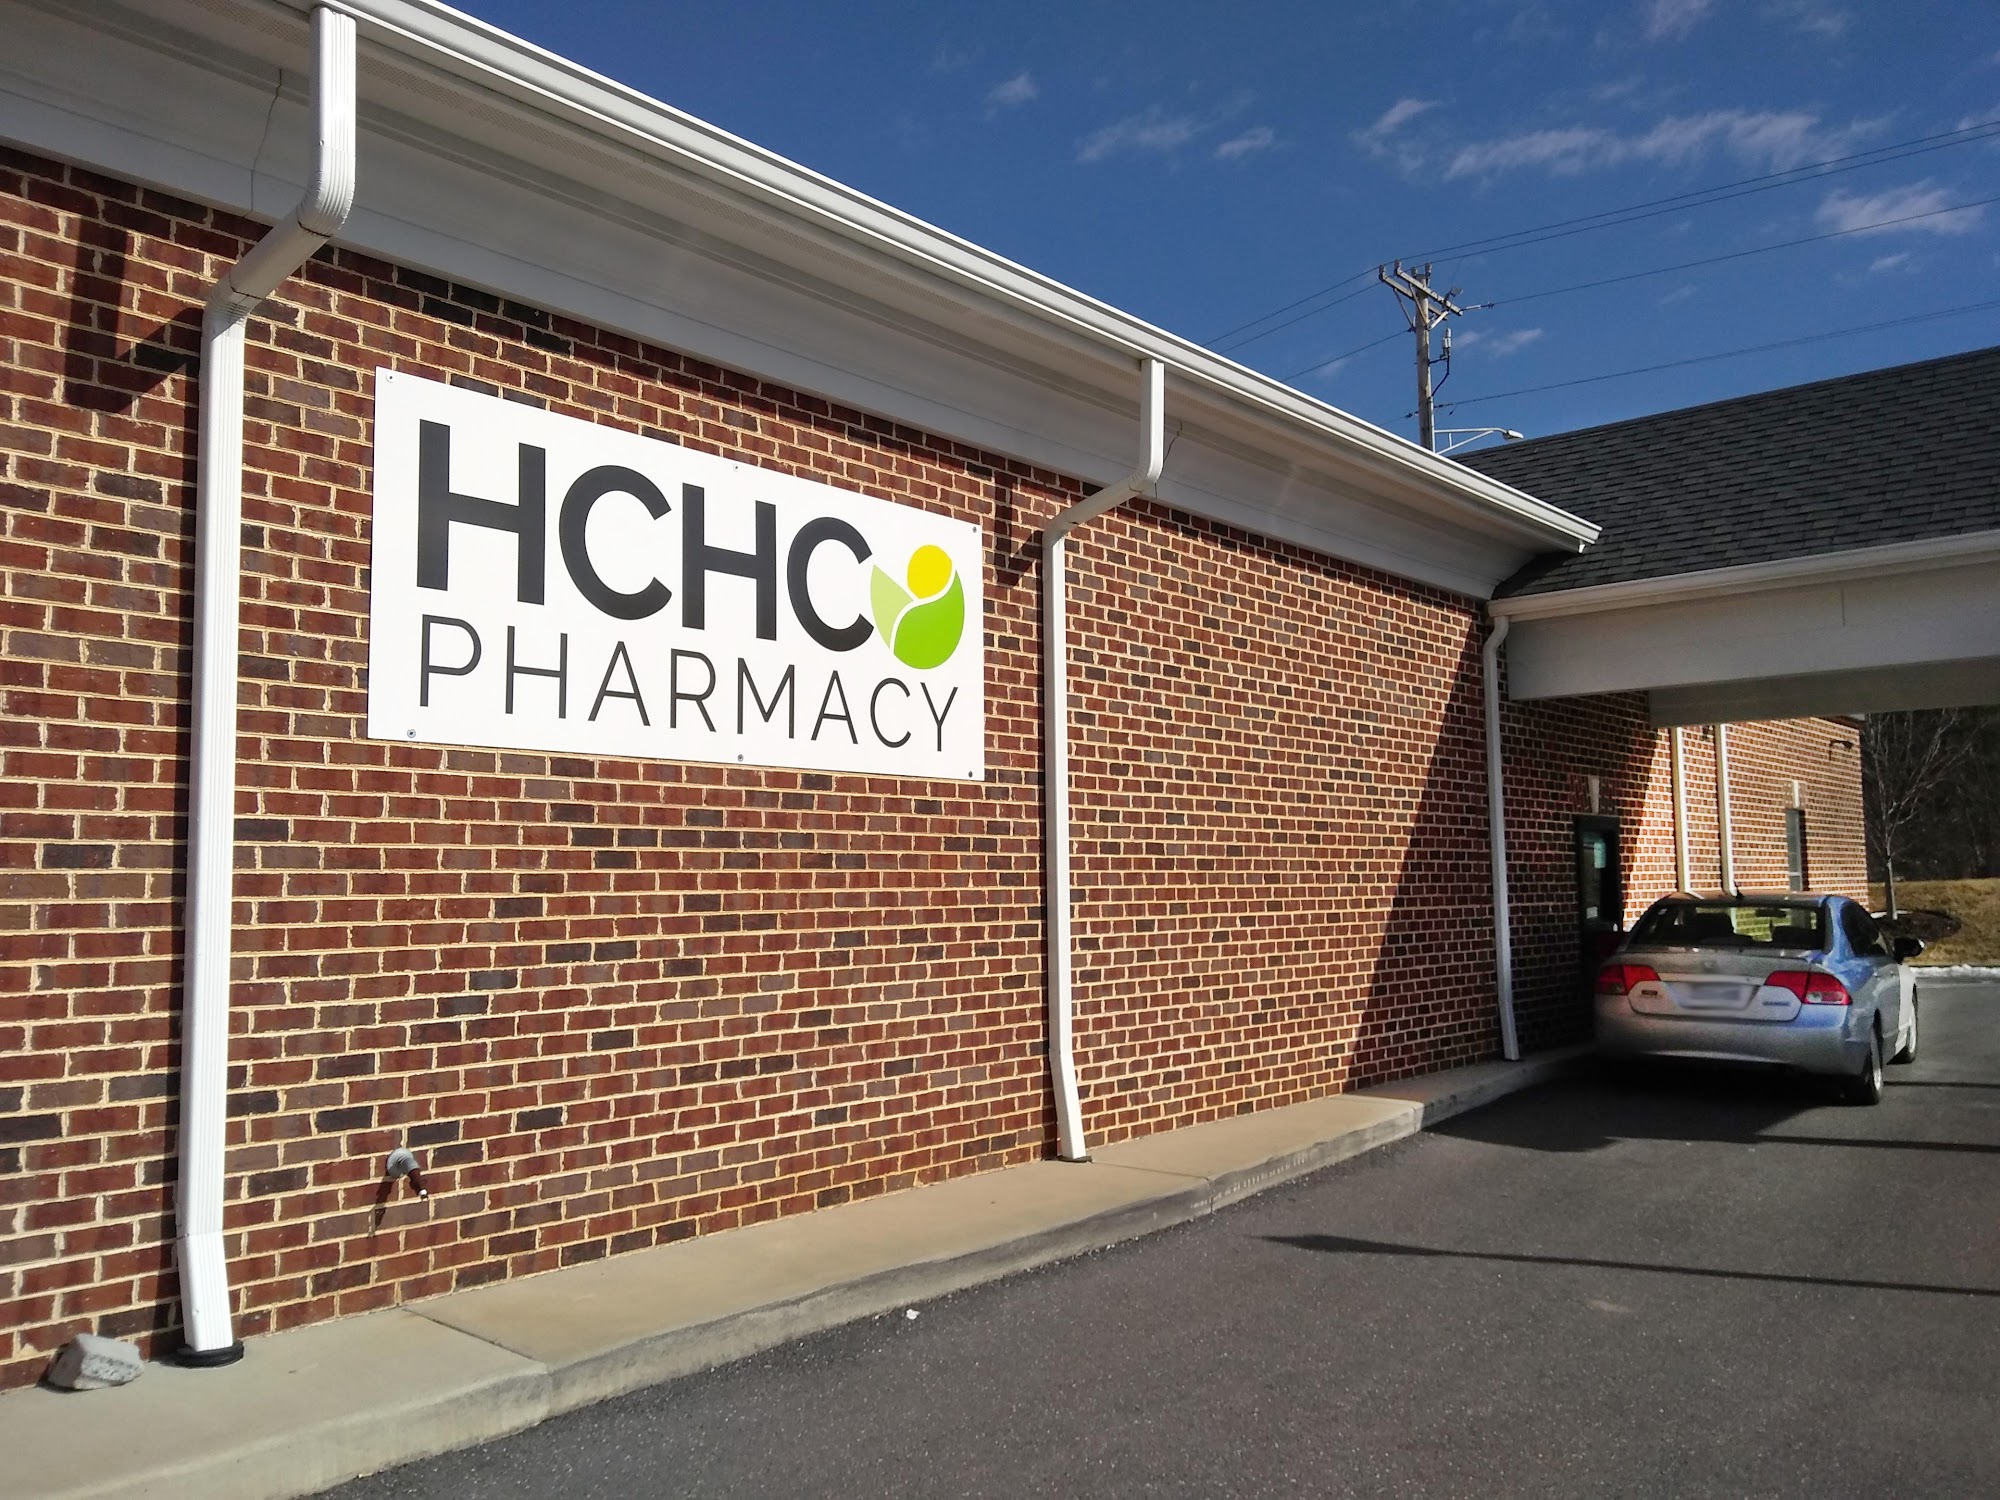 HCHC Pharmacy